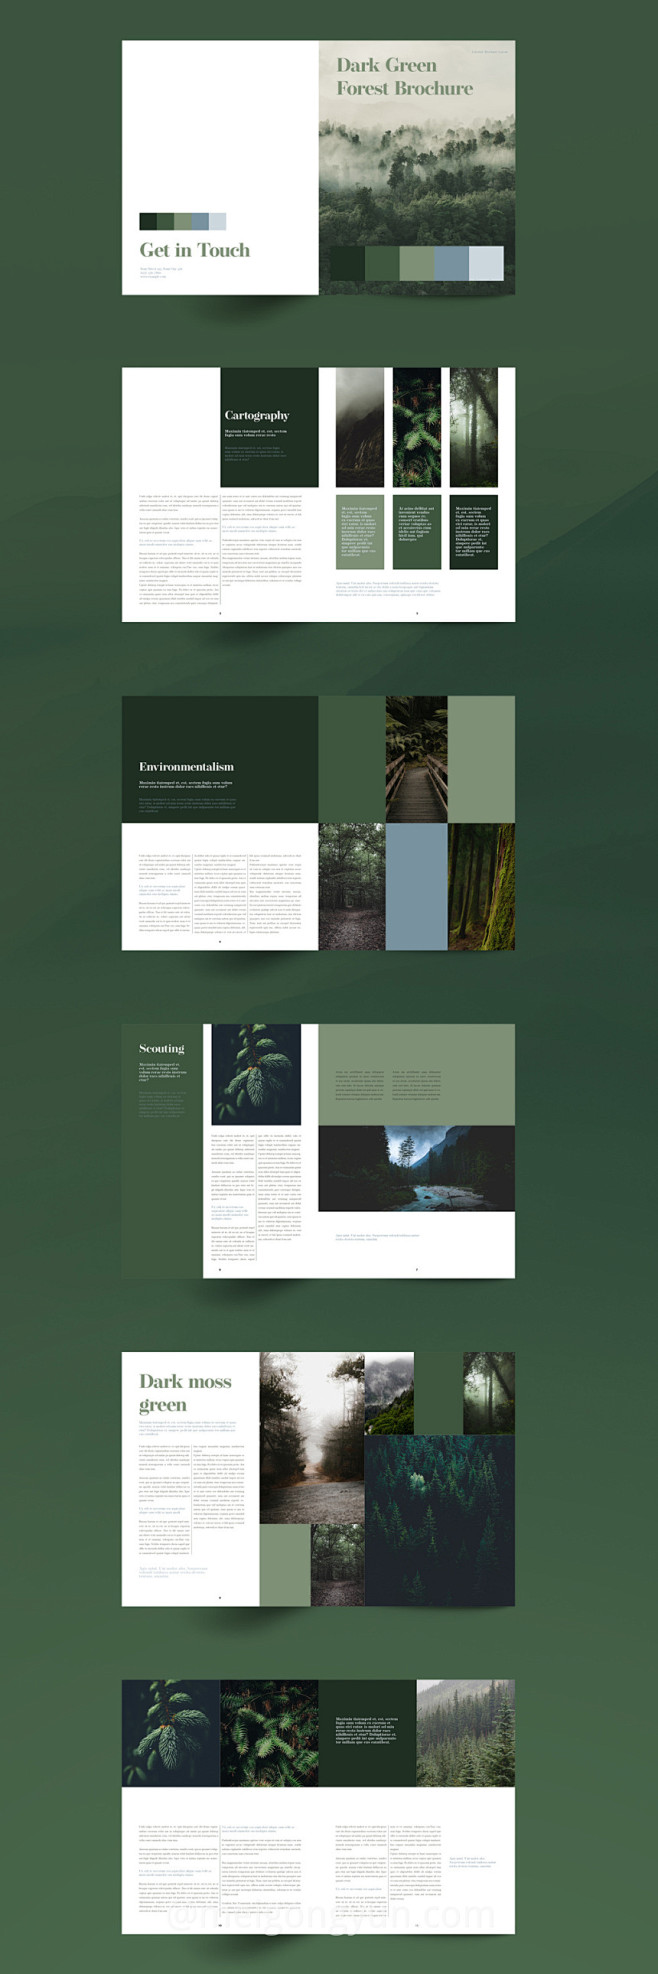 绿色主题森林杂志宣传册设计模板 :  